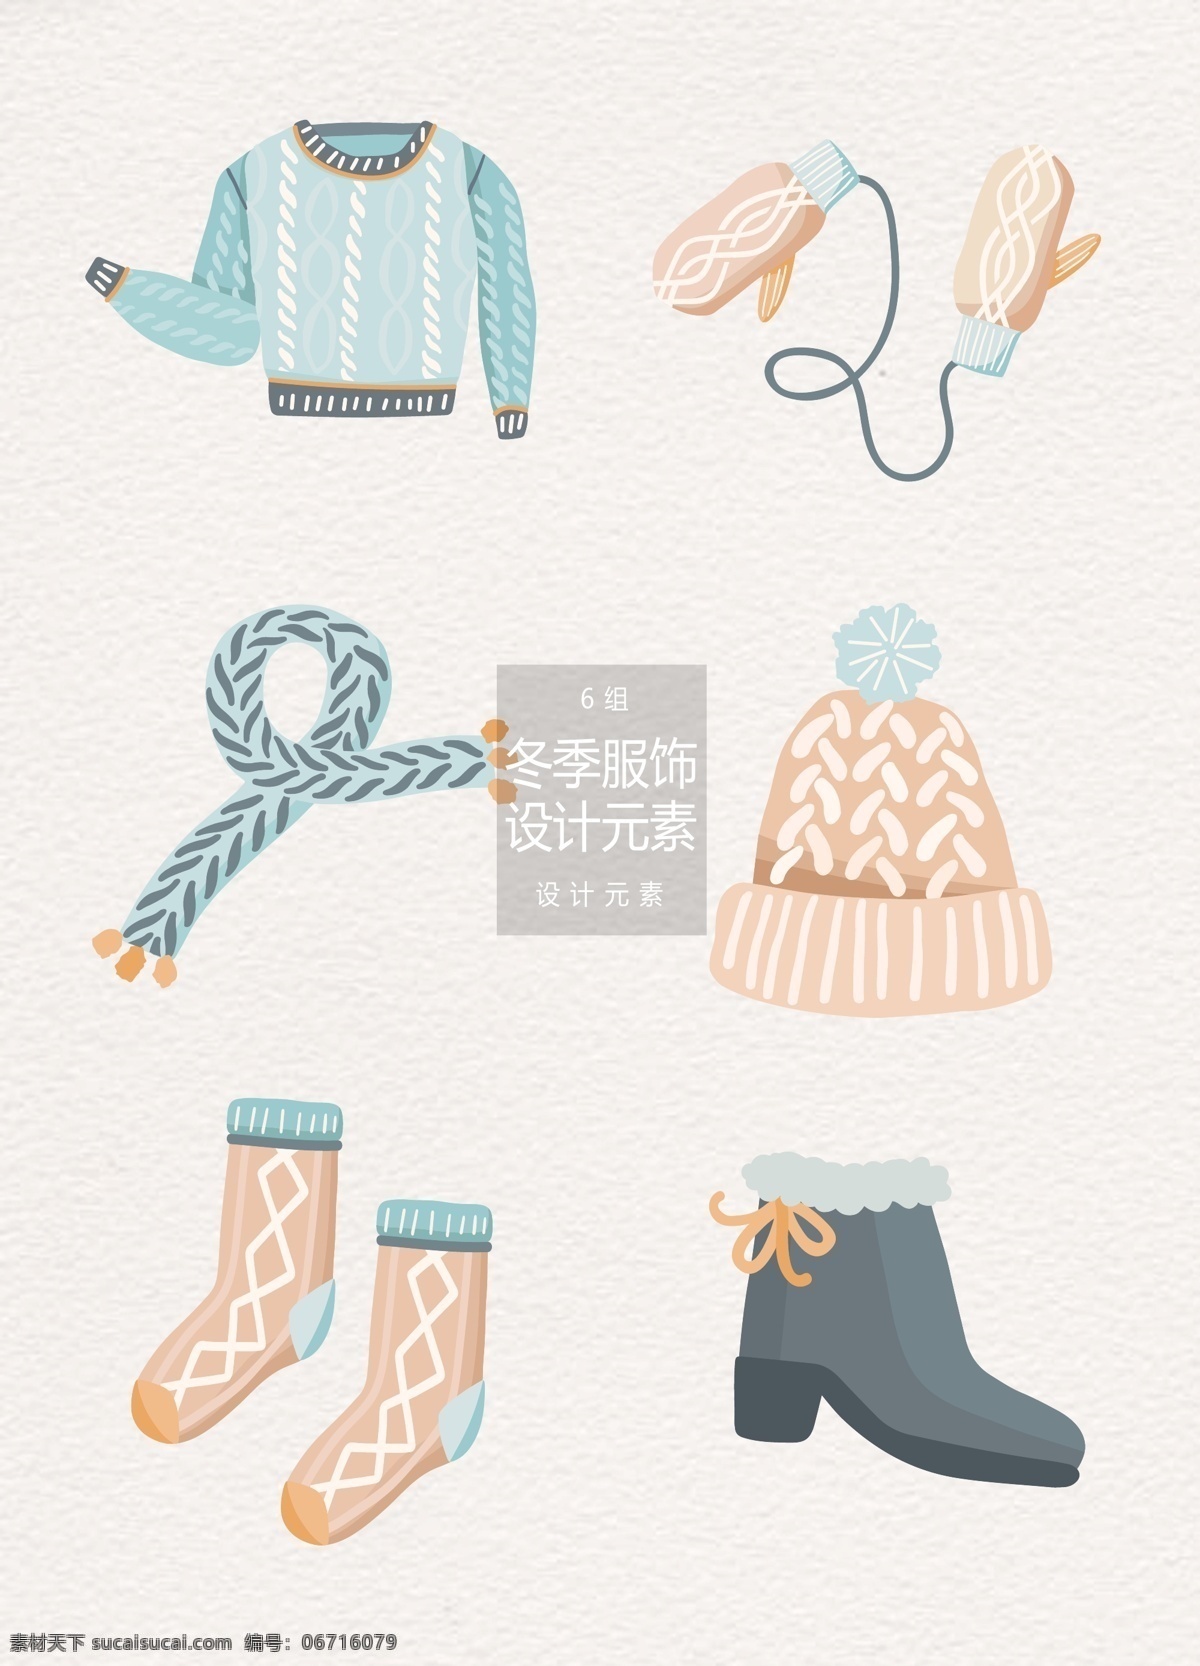 冬季 服装 搭配 元素 冬天 帽子 袜子 鞋子 服装搭配 冬季服装 设计元素 毛衣 手套 围巾